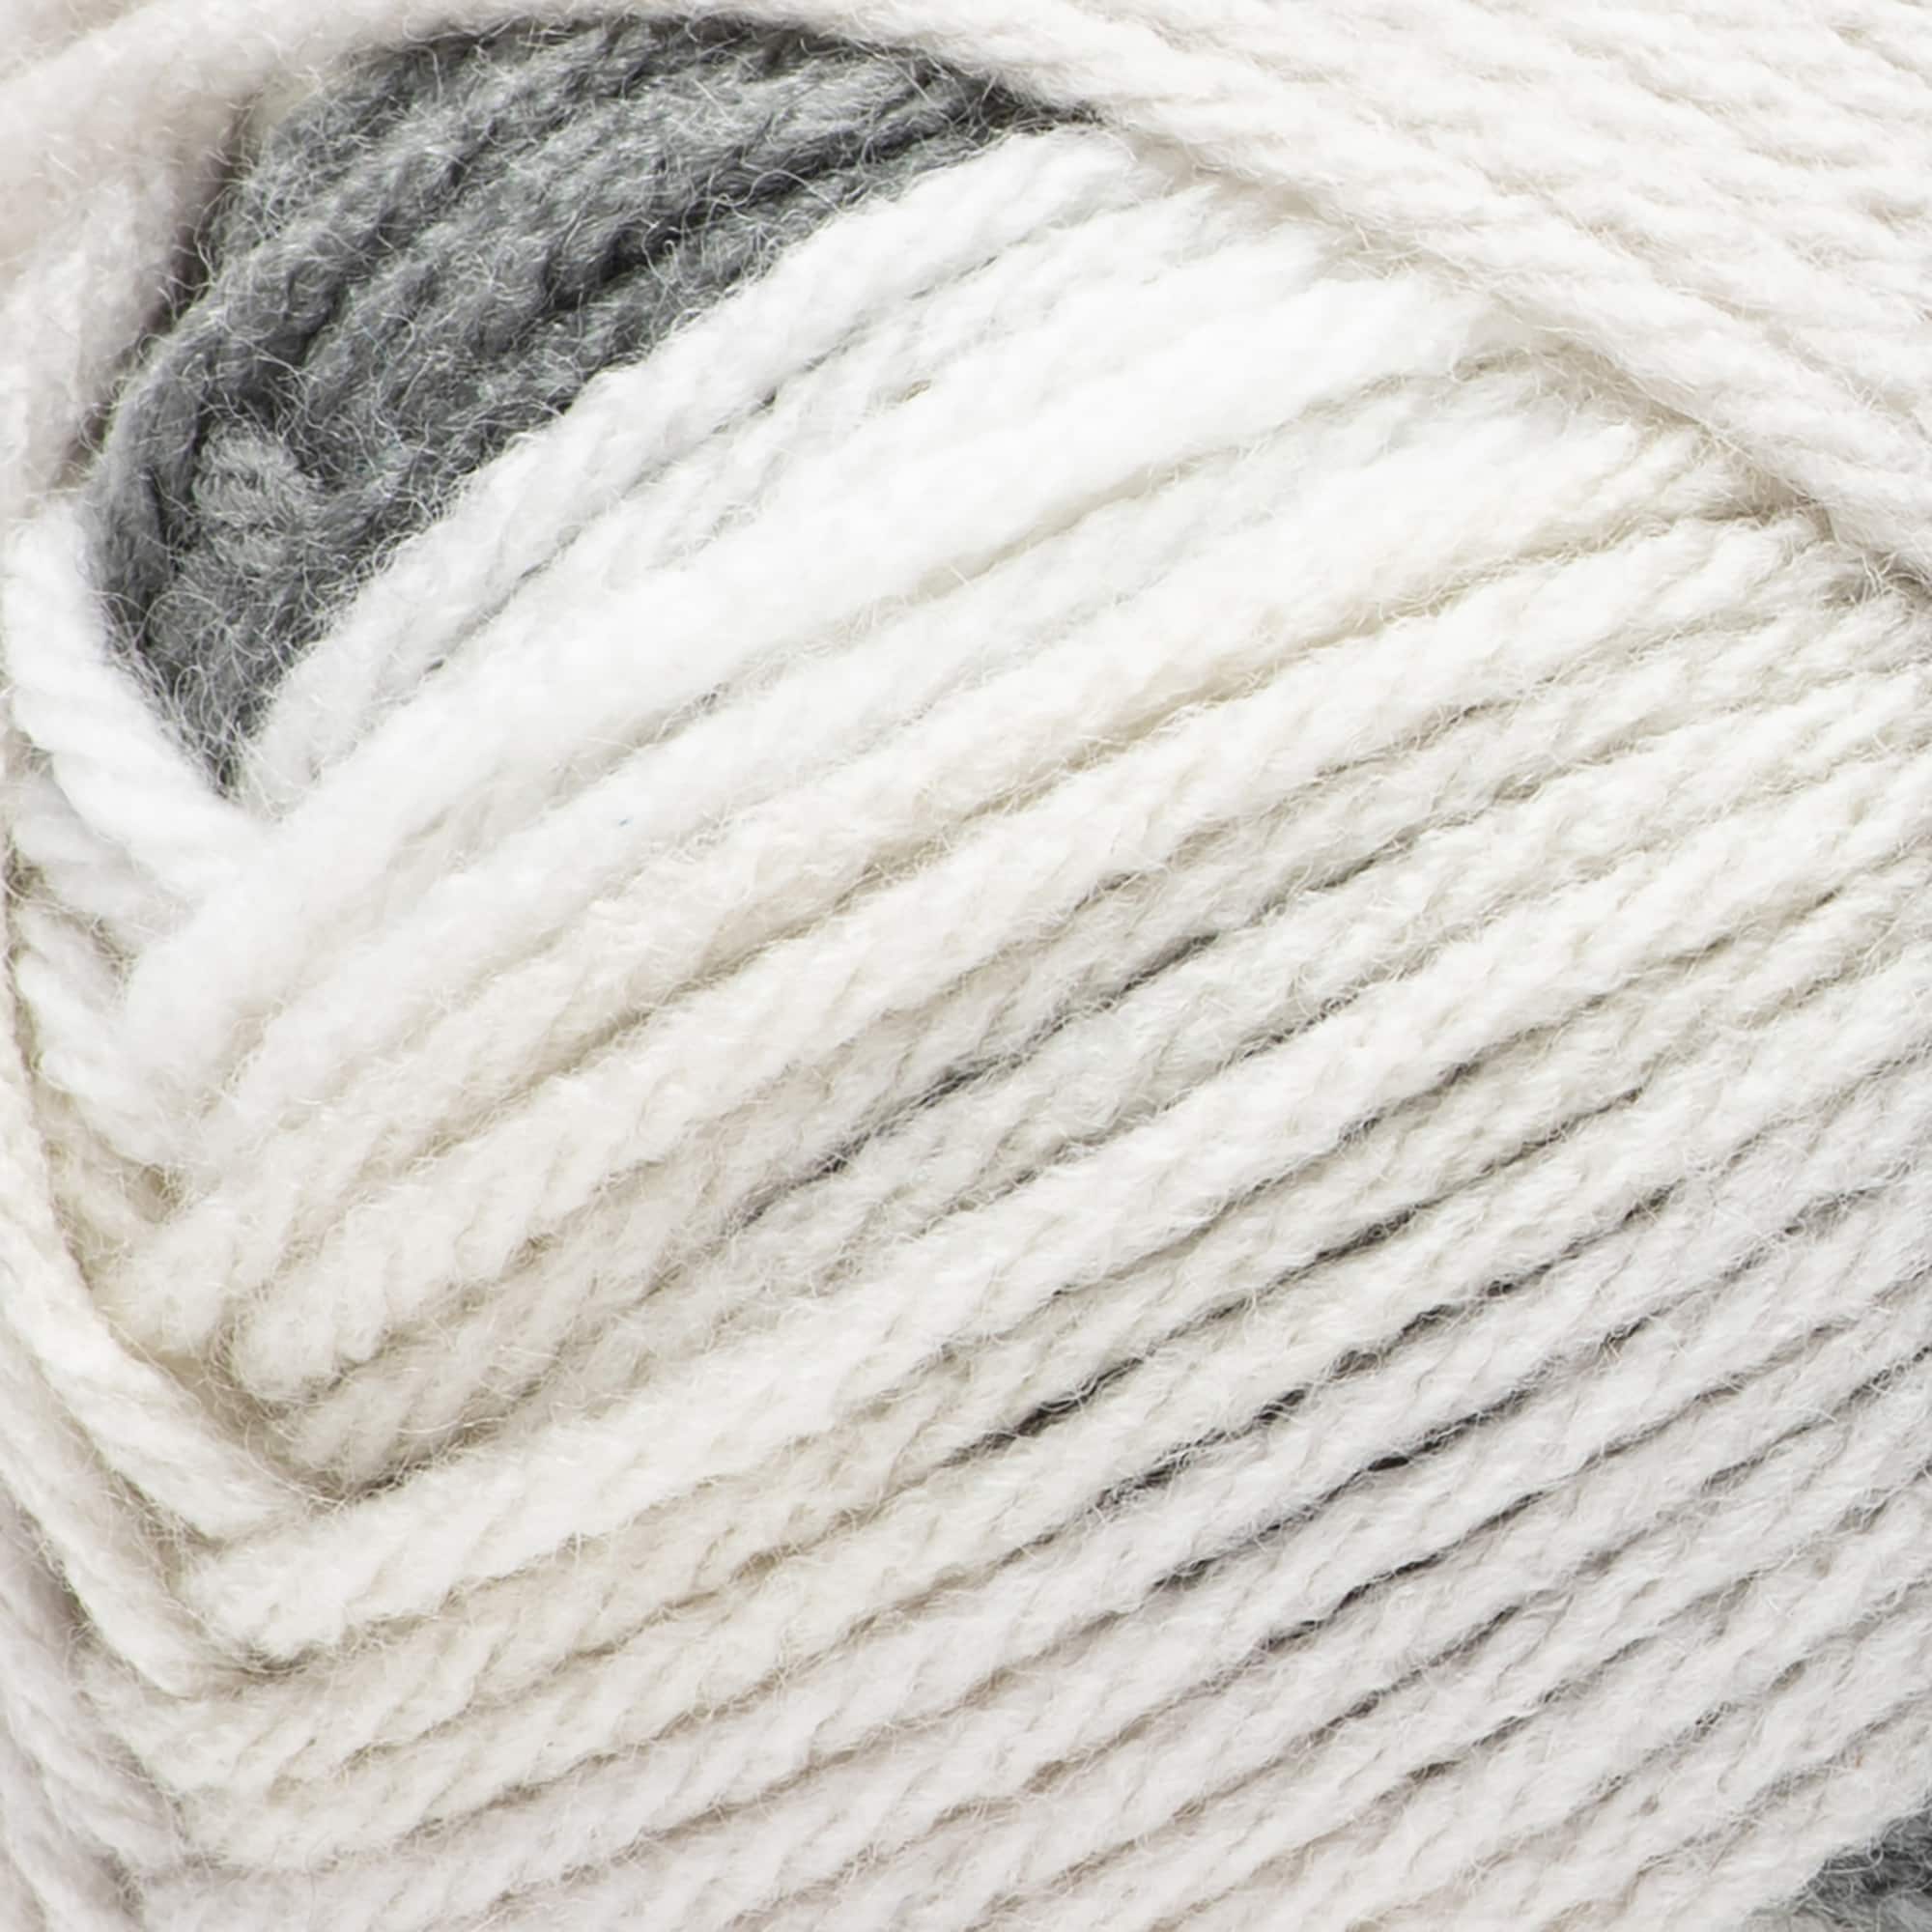 Flecks™ Yarn by Loops & Threads®, Michaels